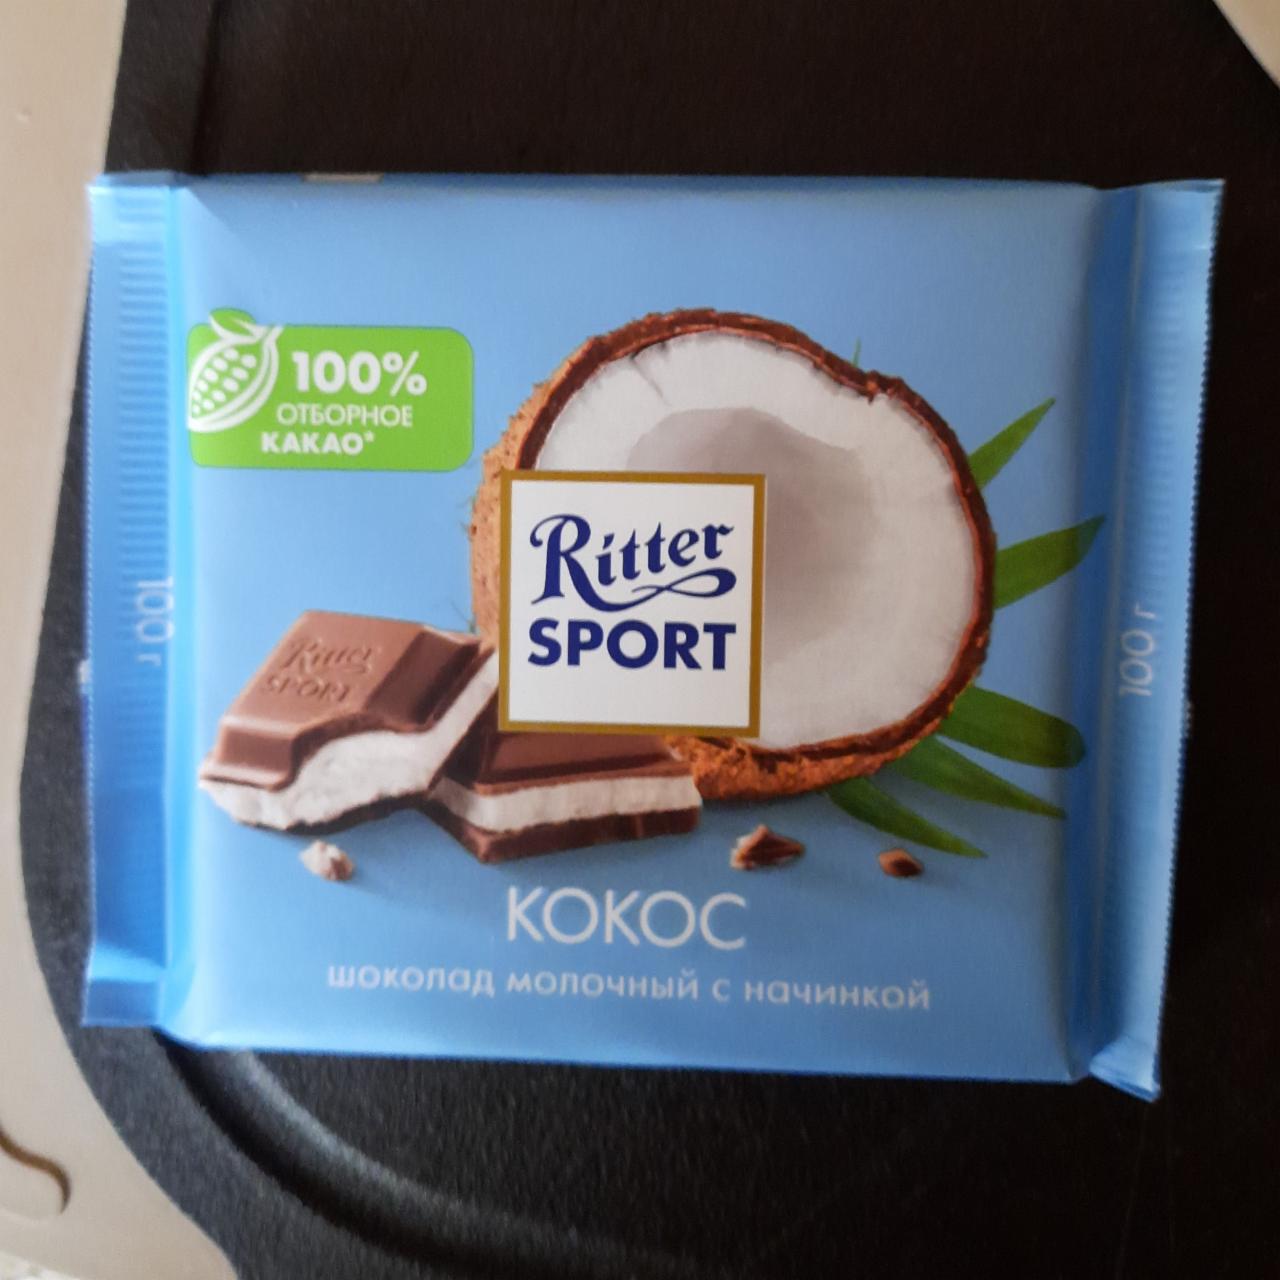 Фото - Шоколад молочный с кокосовой начинкой Ritter Sport